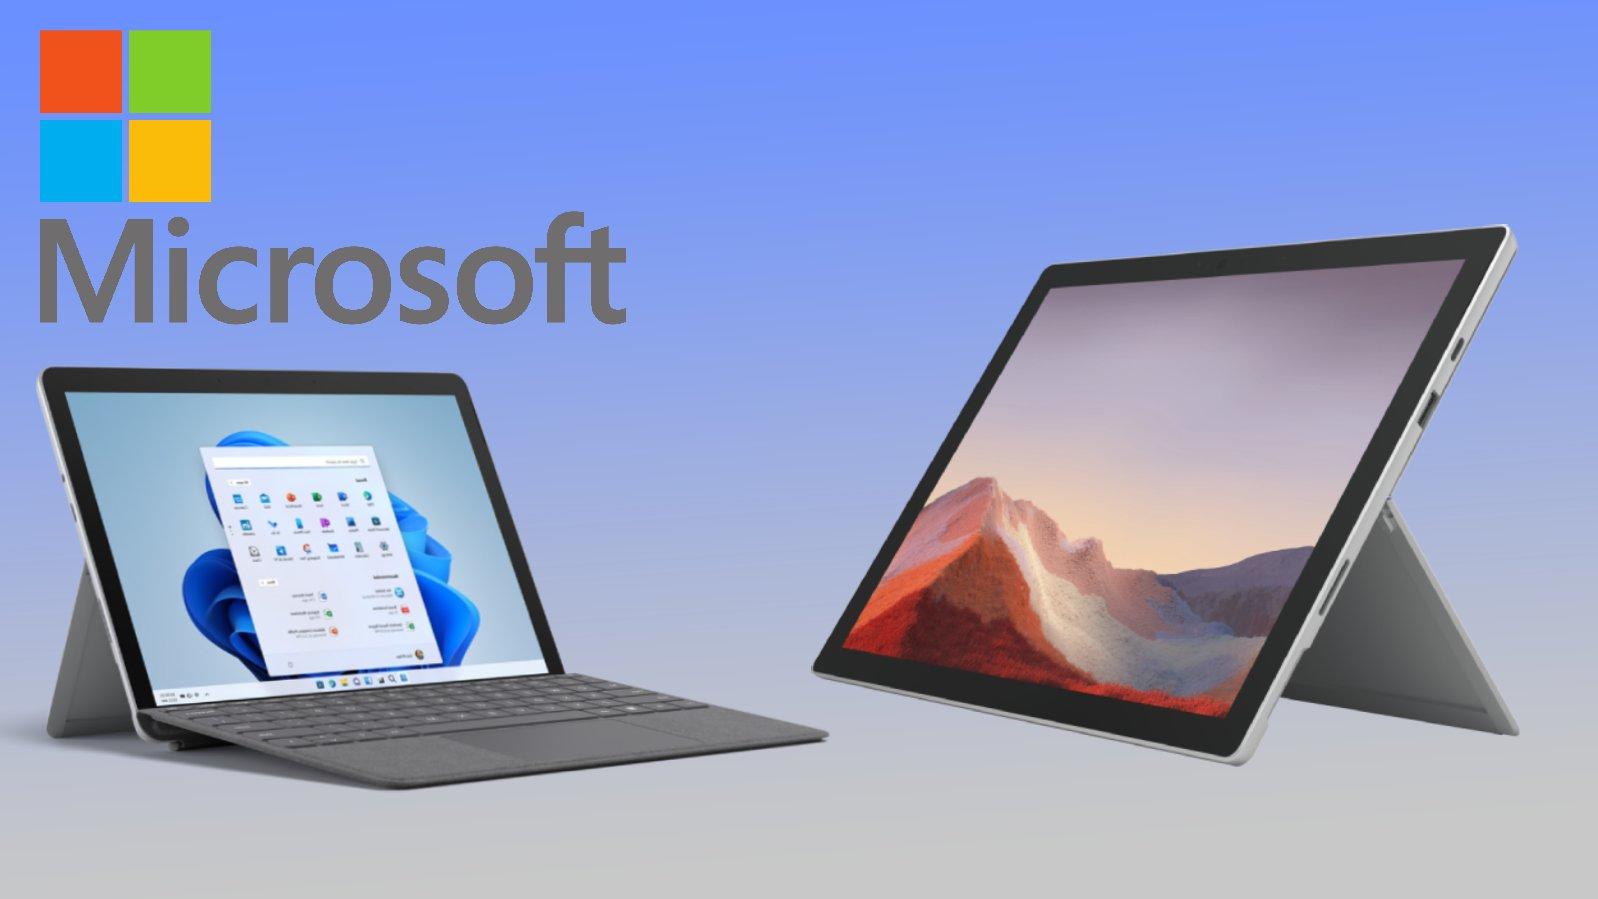 Das Microsoft Surface 7 und das Go3 stehen vor einem blauen Hintergrund.